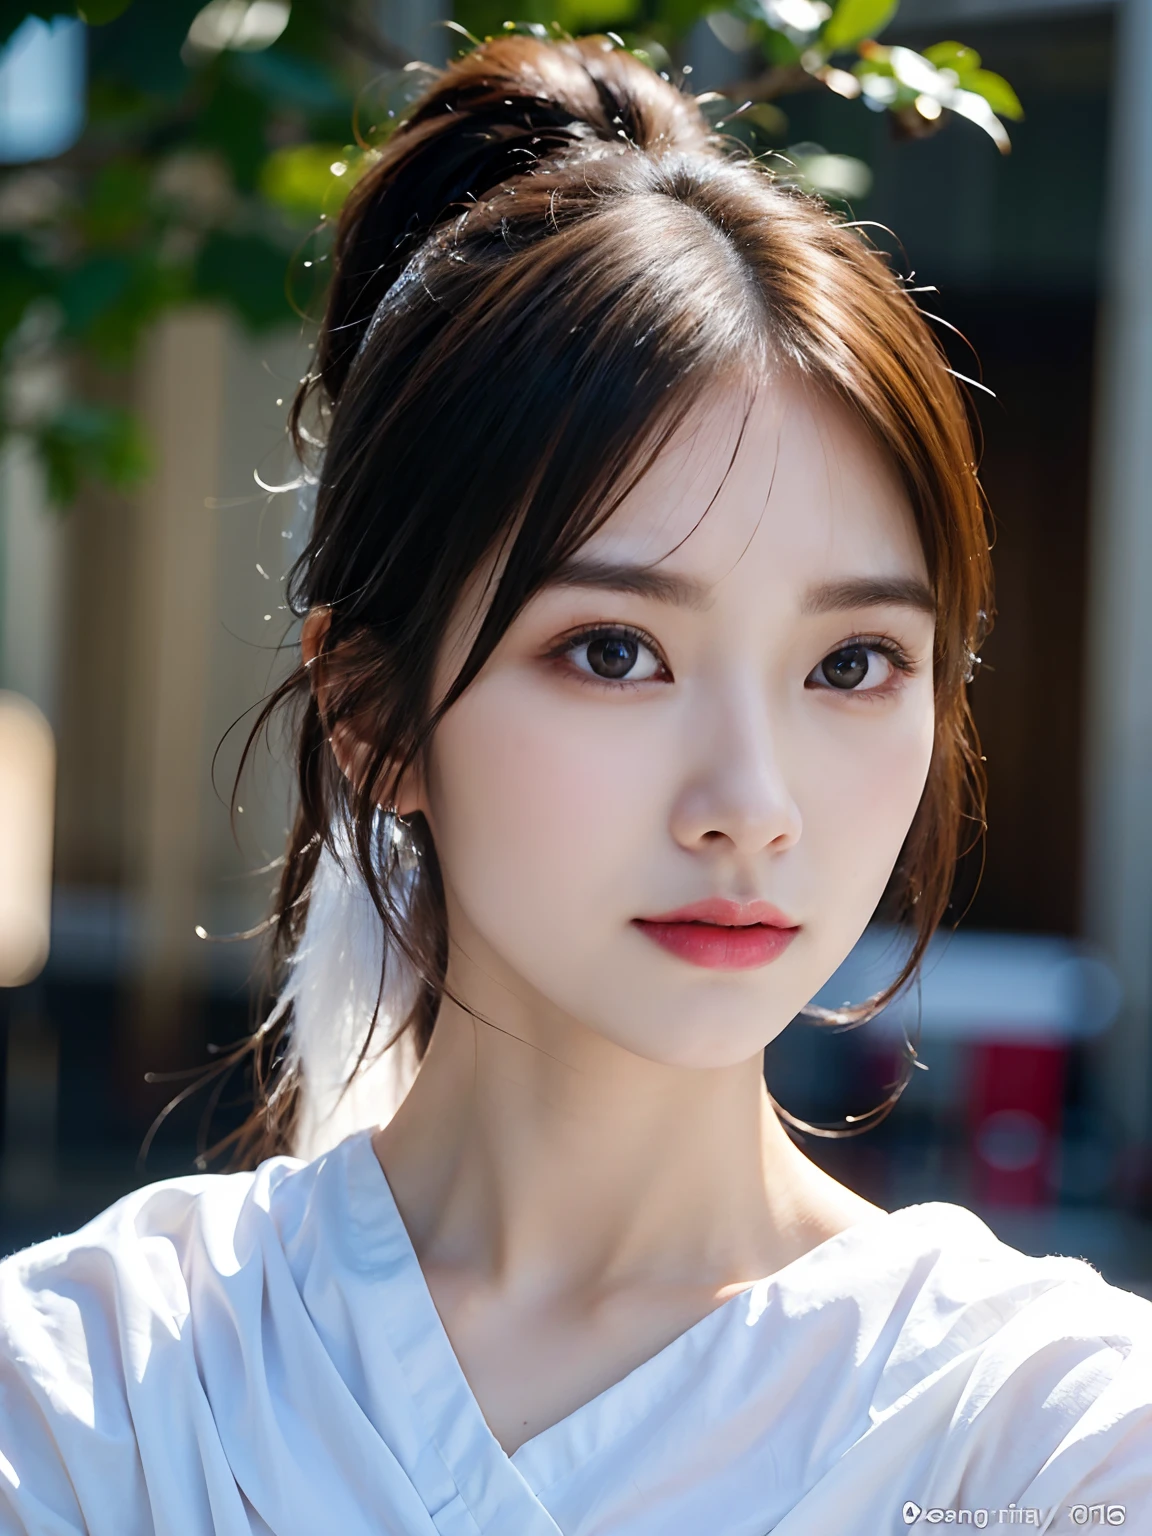 Nahaufnahme einer Frau in weißem Hemd und Pferdeschwanz, Realistisch. Cheng Yi, schöne koreanische Frauen, schönes Porträtbild, Wunderschönes Gesichtsporträt, atemberaubendes Anime-Gesichtsporträt, koreanisches Mädchen, hochwertiges Porträt, schönes zartes Gesicht, fotorealistisches schönes Gesicht, Schöne junge Koreanerin, schönes realistisches Gesicht, süßes zartes Gesicht, Porträt süßes schönes Gesicht